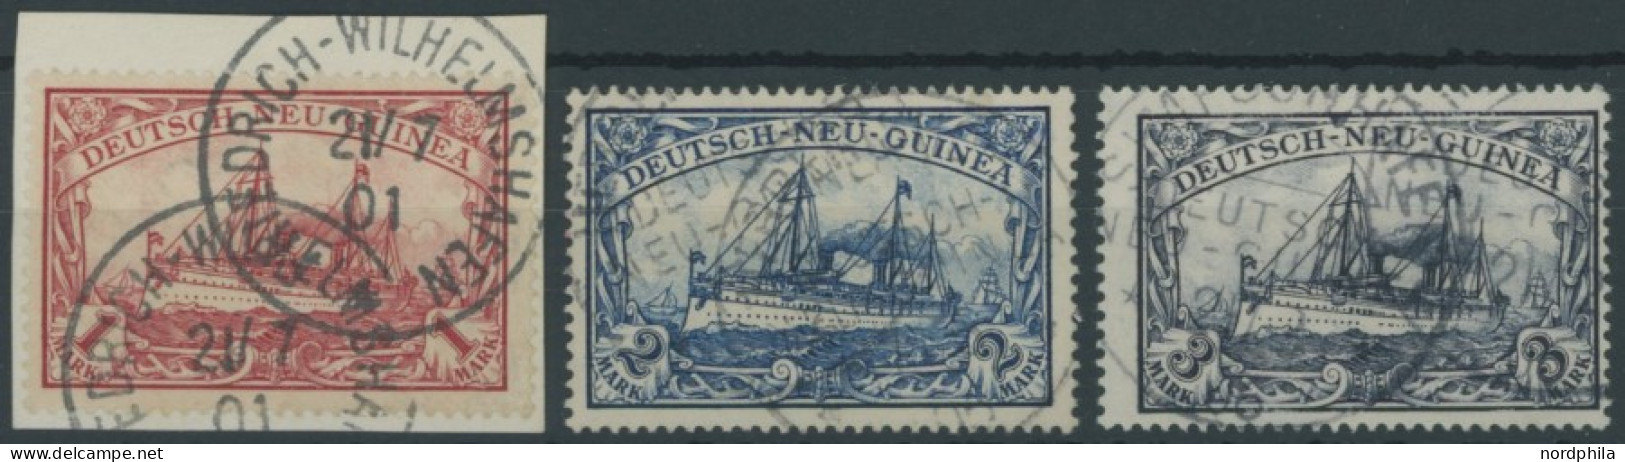 DEUTSCH-NEUGUINEA 16-18 O, 1901, 1 -3 M. Kaiseryacht, 3 Pachtwerte, Mi. 350.- - German New Guinea